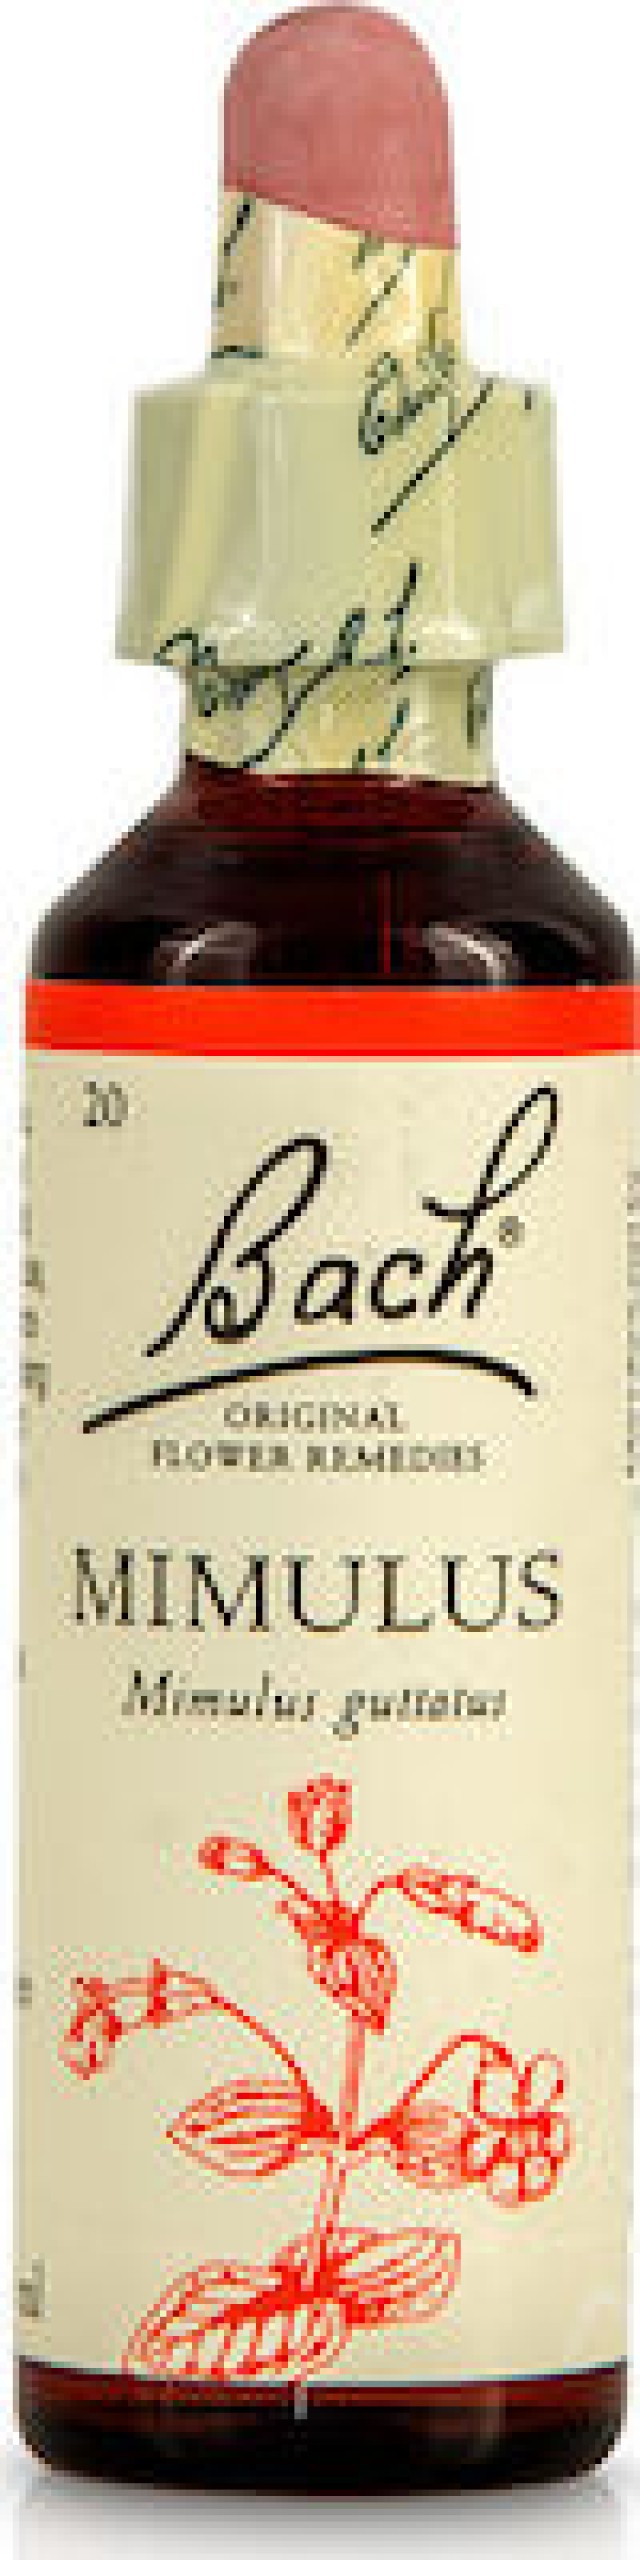 Dr Bach Mimulus Ανθοϊαμα Για άτομα που φοβούνται συγκεκριμένες καταστάσεις , 20 ml